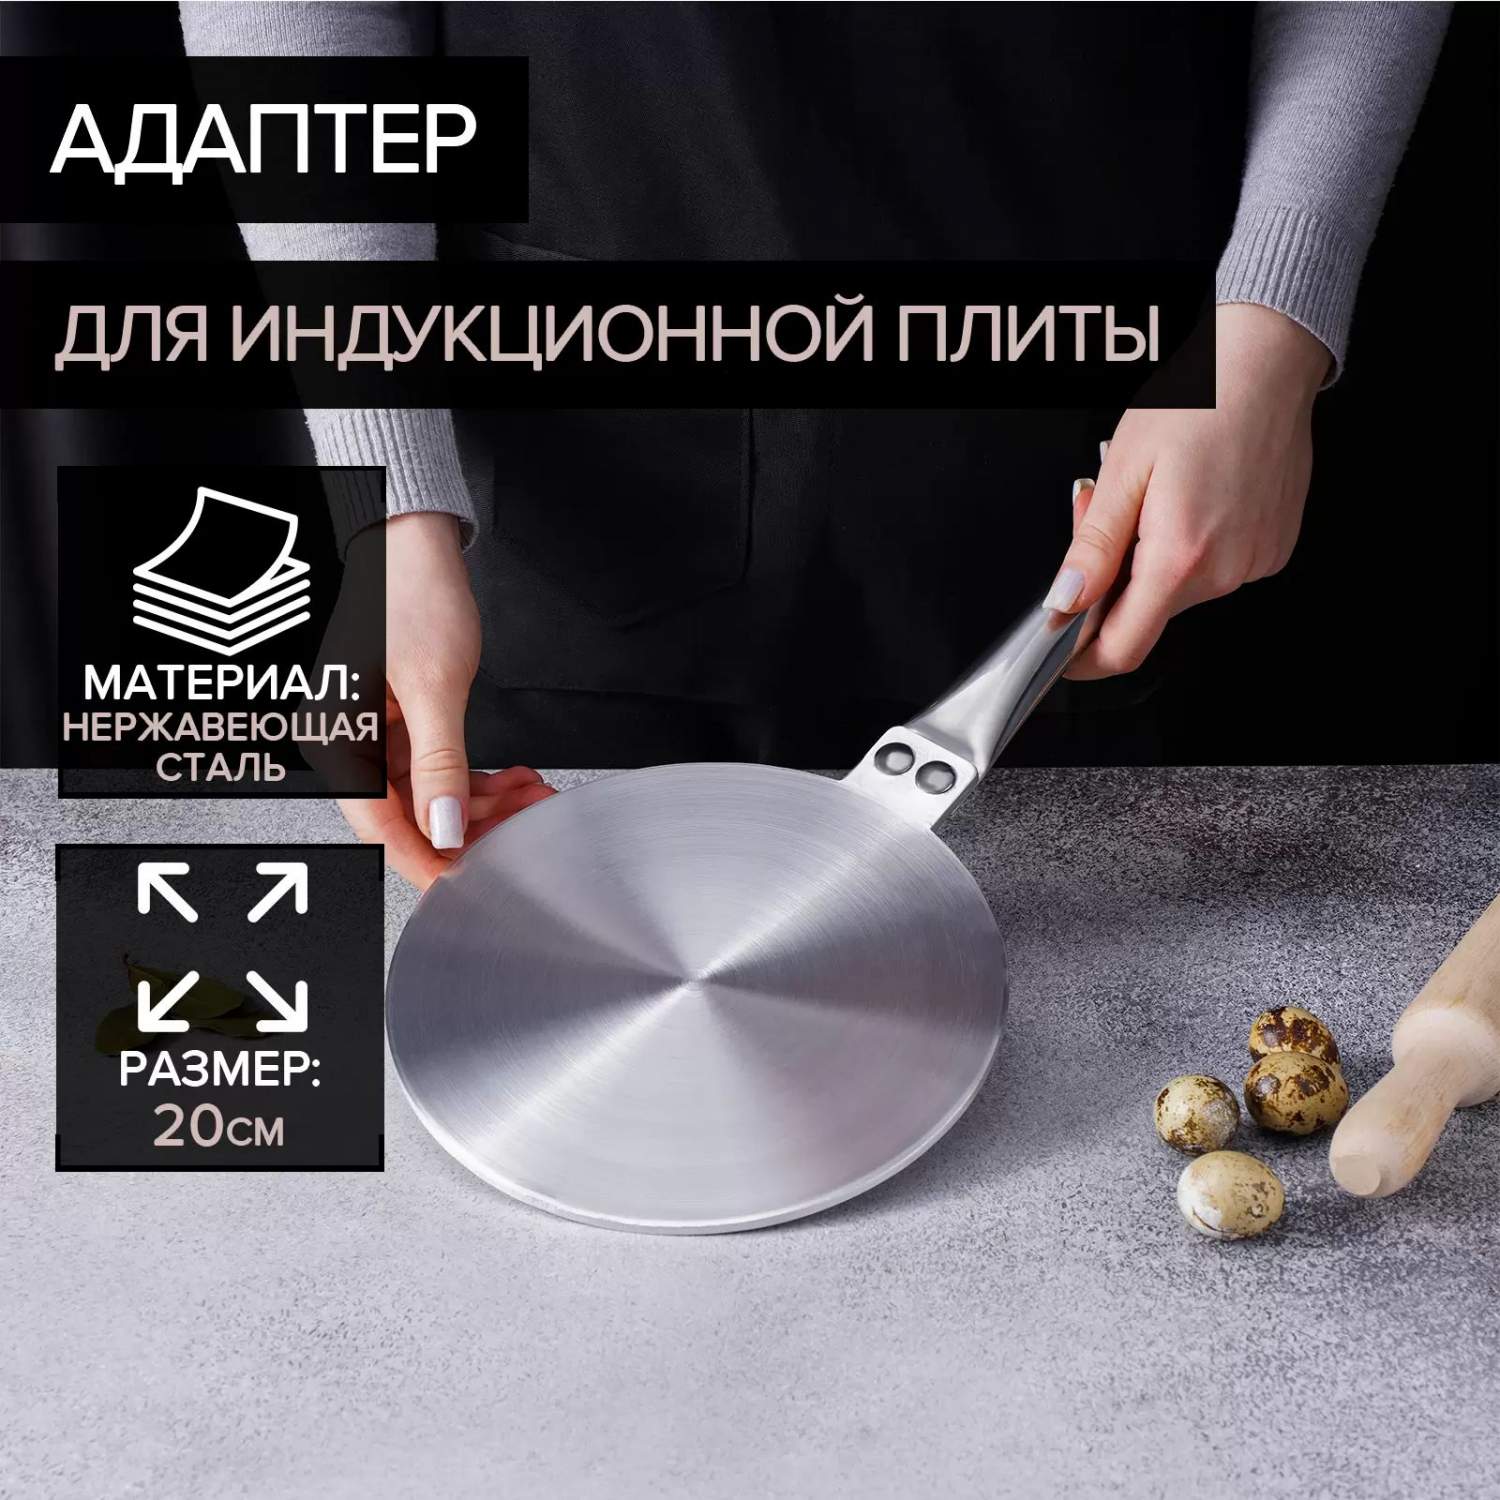 Купить Индукционные плиты в Санкт-Петербурге